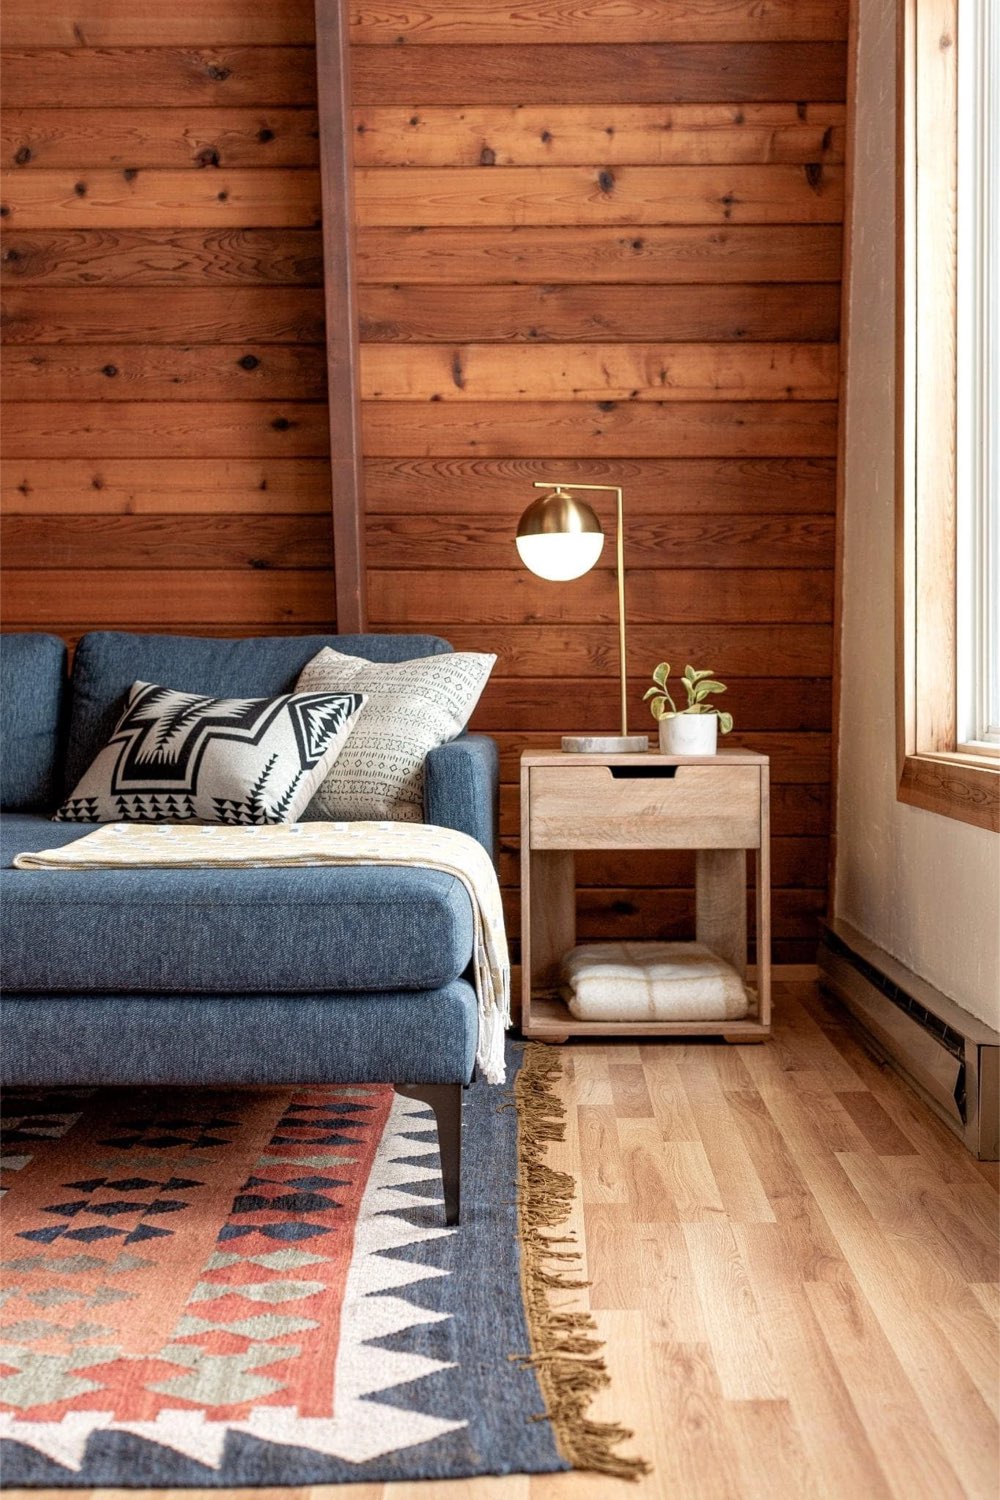 exemple chalet esprit scandinave moderne mur en bois lambris naturel cosy et chaleureux salon petit bout de canapé avec lampe à poser style contemporain